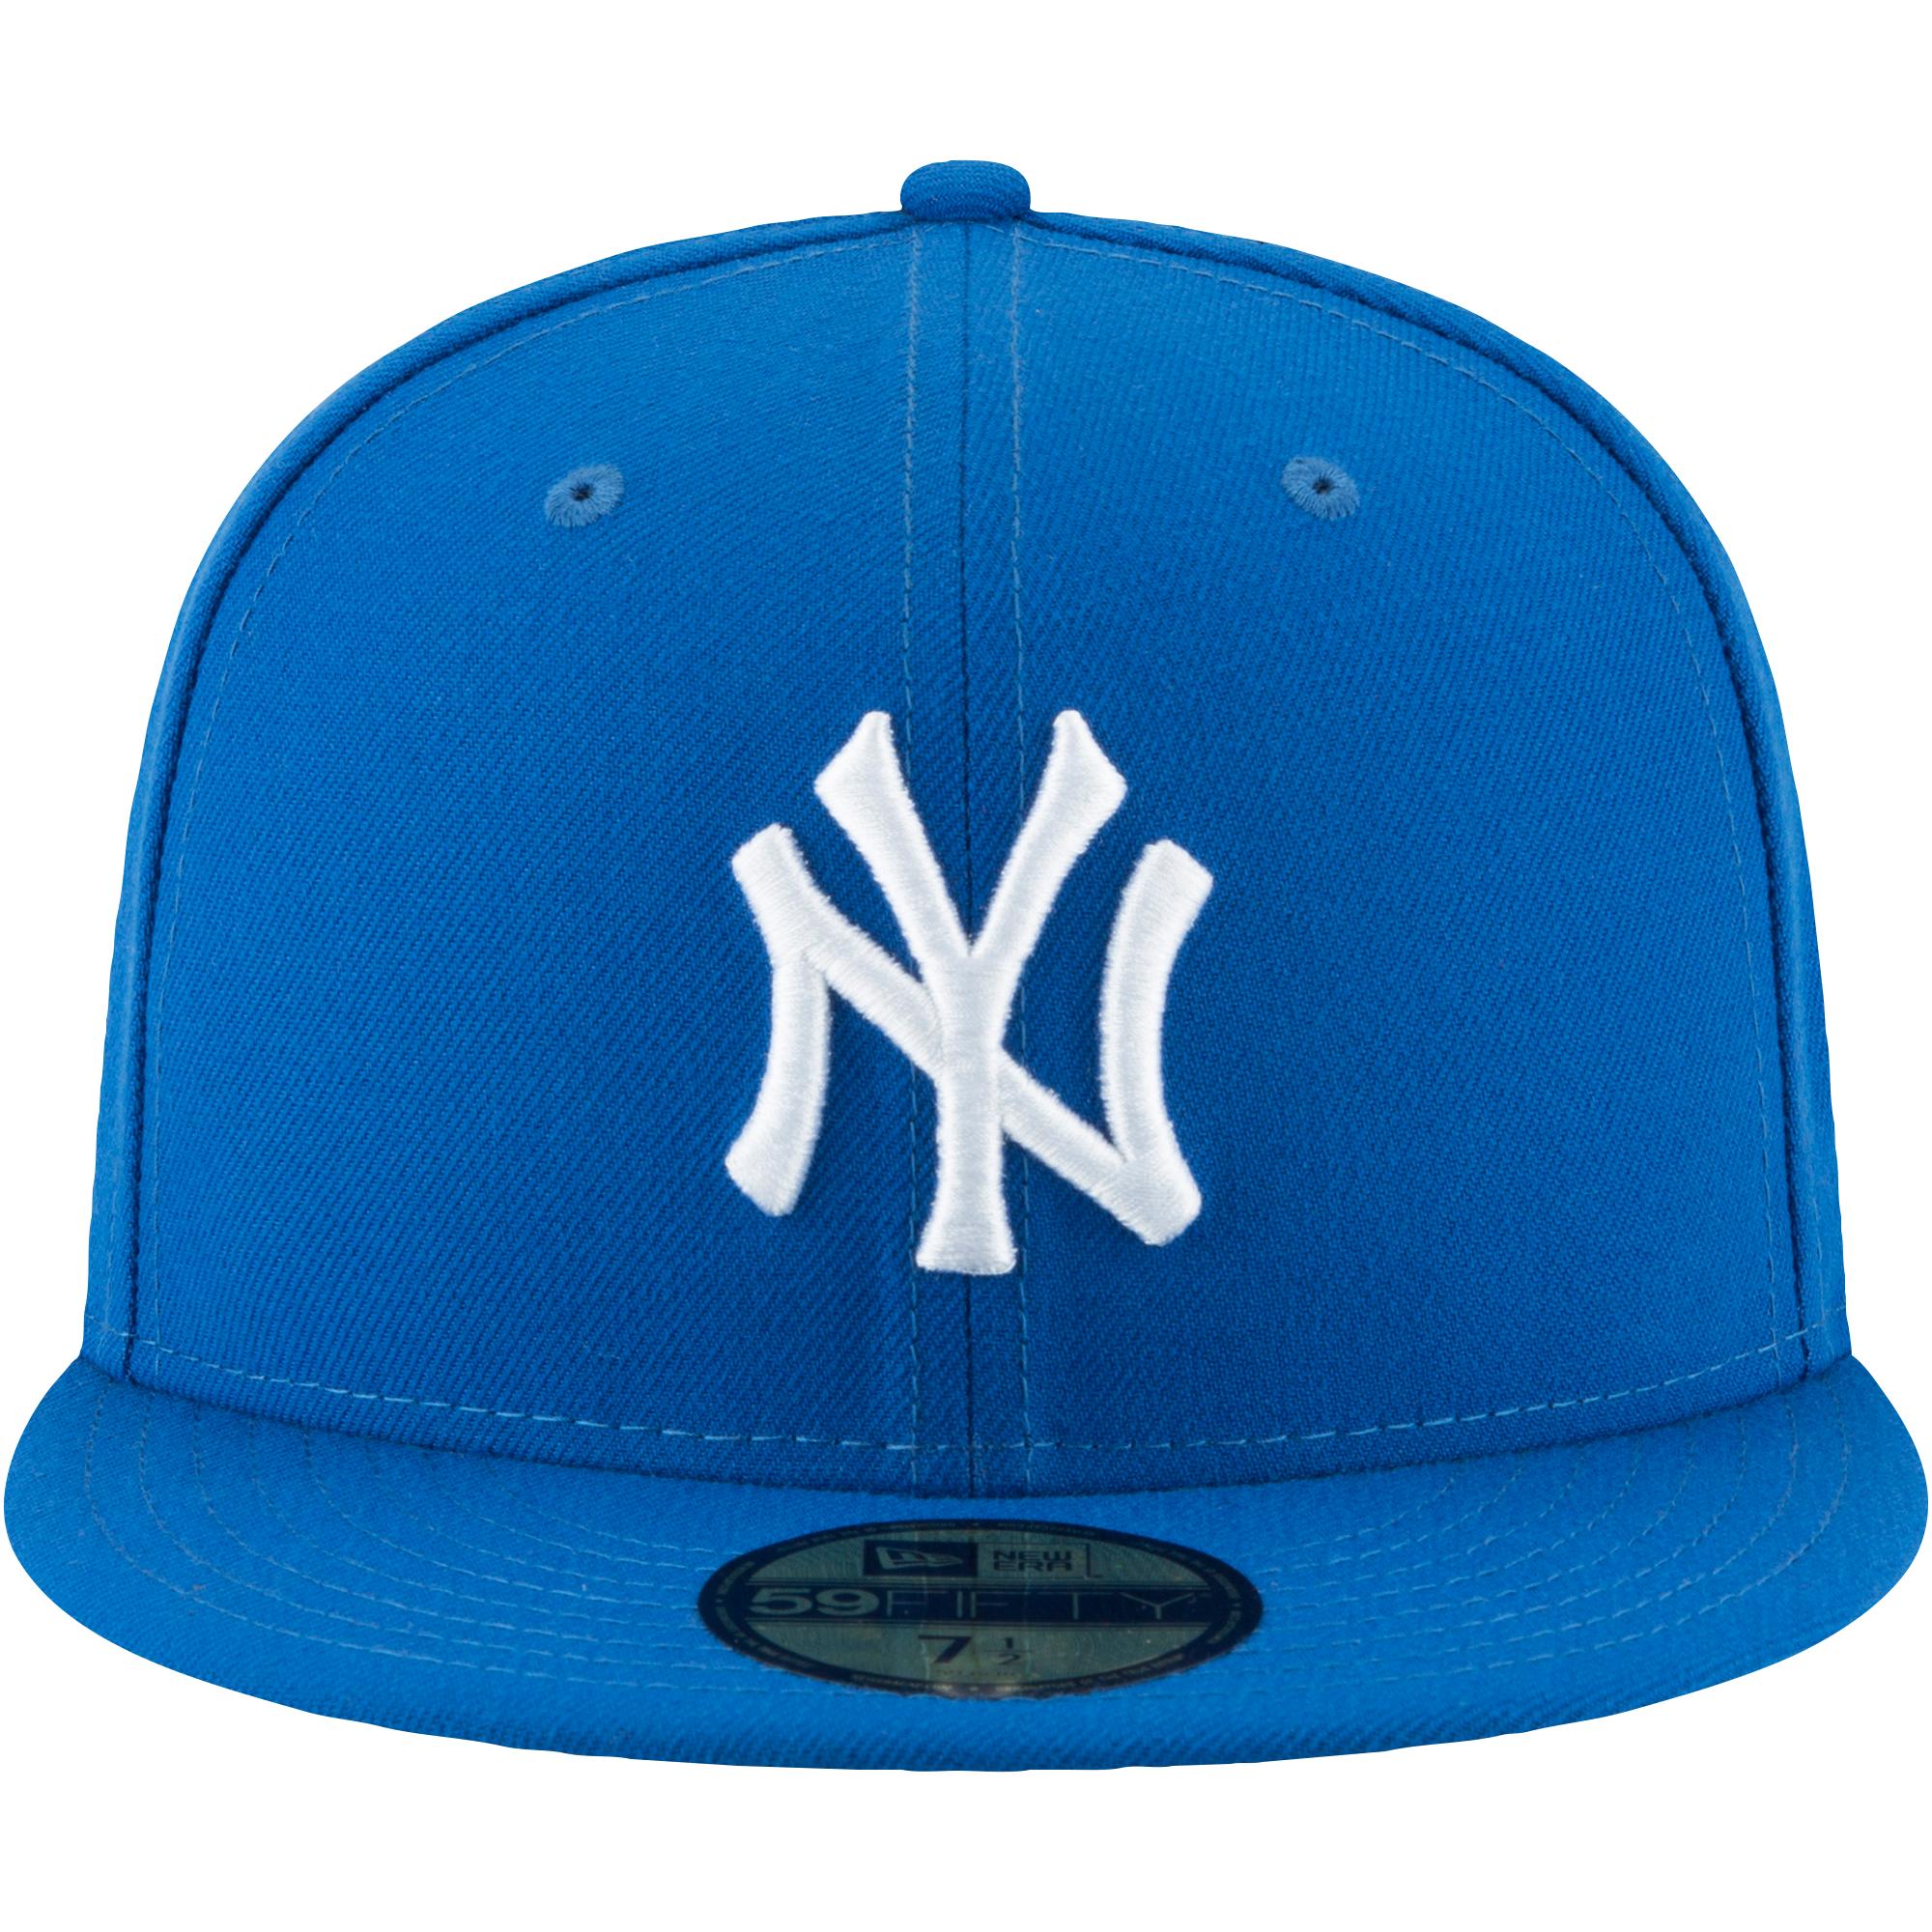 KTZ New York Yankees Mlb 59fifty Basic Cap in Blue for Men - Lyst